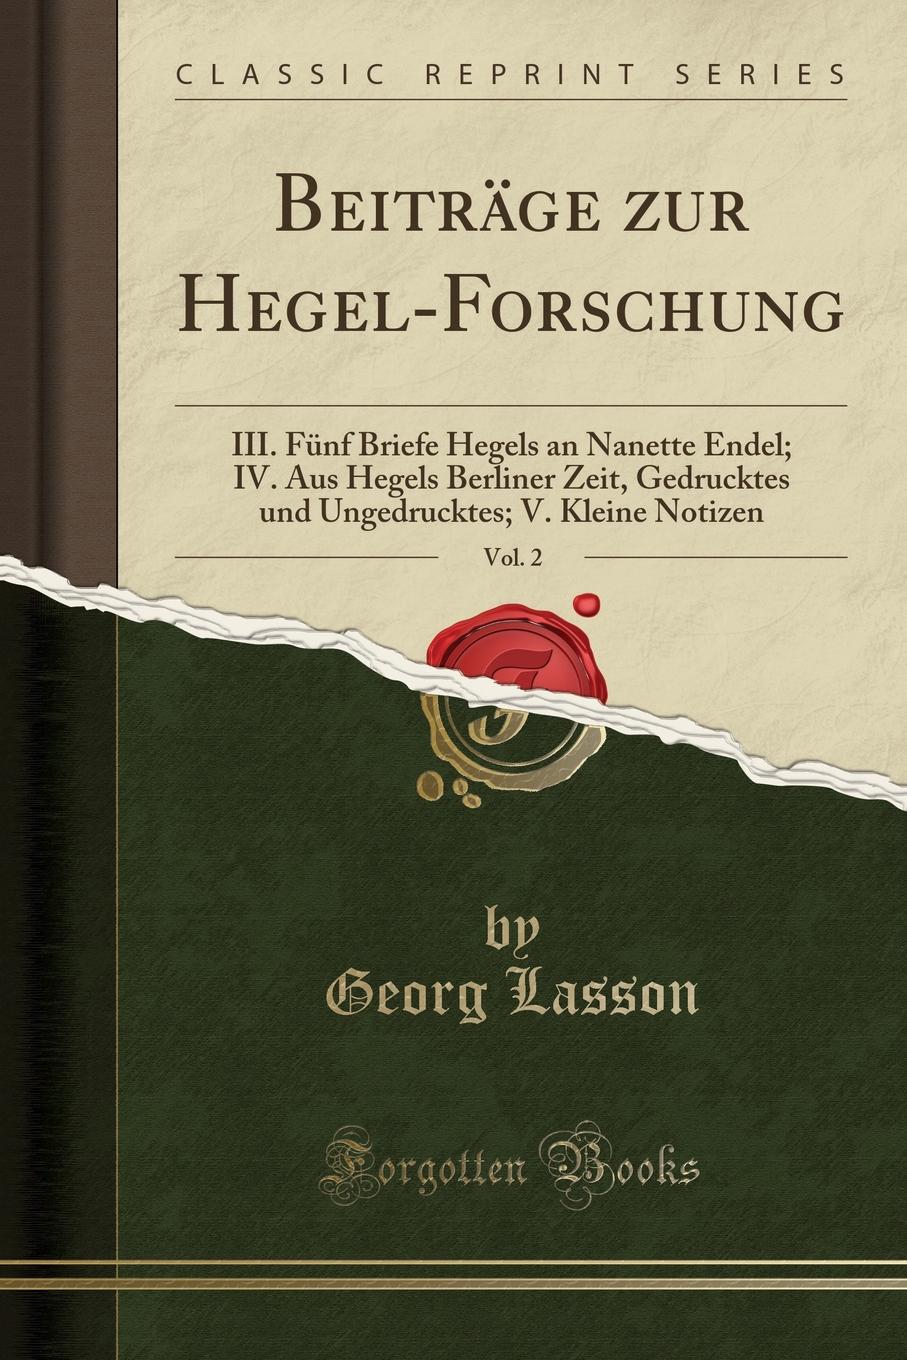 Georg Lasson Beitrage zur Hegel-Forschung, Vol. 2. III. Funf Briefe Hegels an Nanette Endel; IV. Aus Hegels Berliner Zeit, Gedrucktes und Ungedrucktes; V. Kleine Notizen (Classic Reprint)